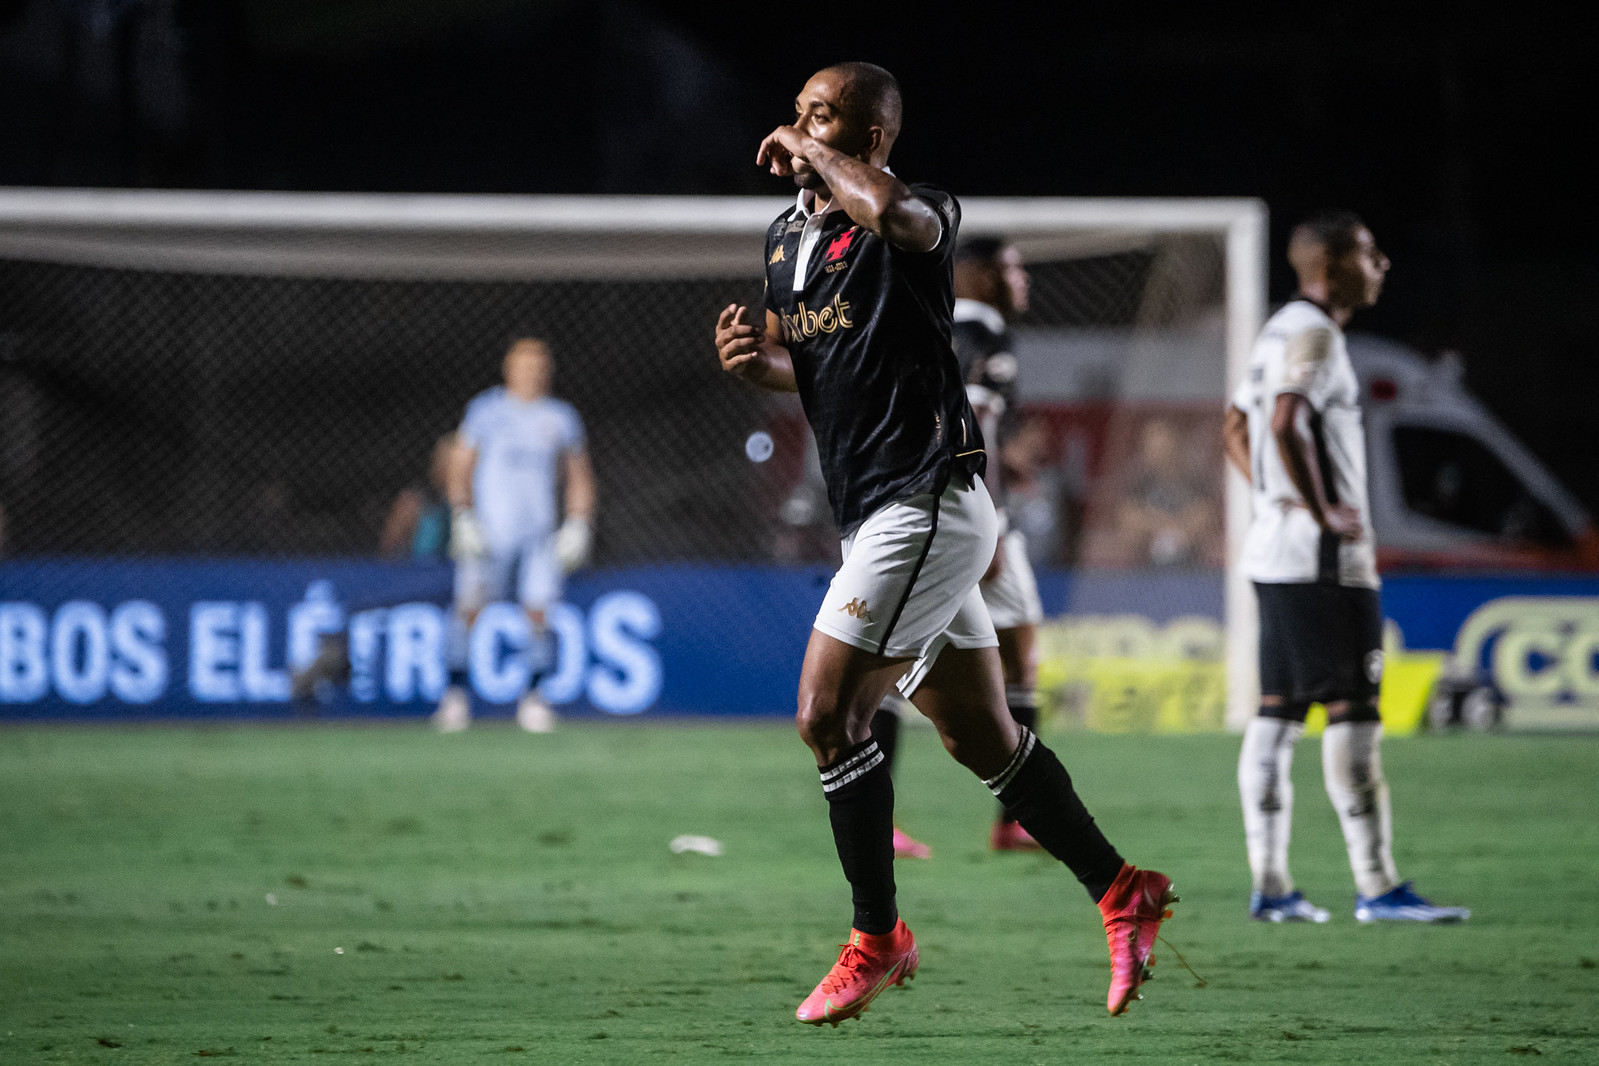 Paulo Henrique fez o gol da vitória do Vasco (Foto: Leandro Amorim/Vasco)